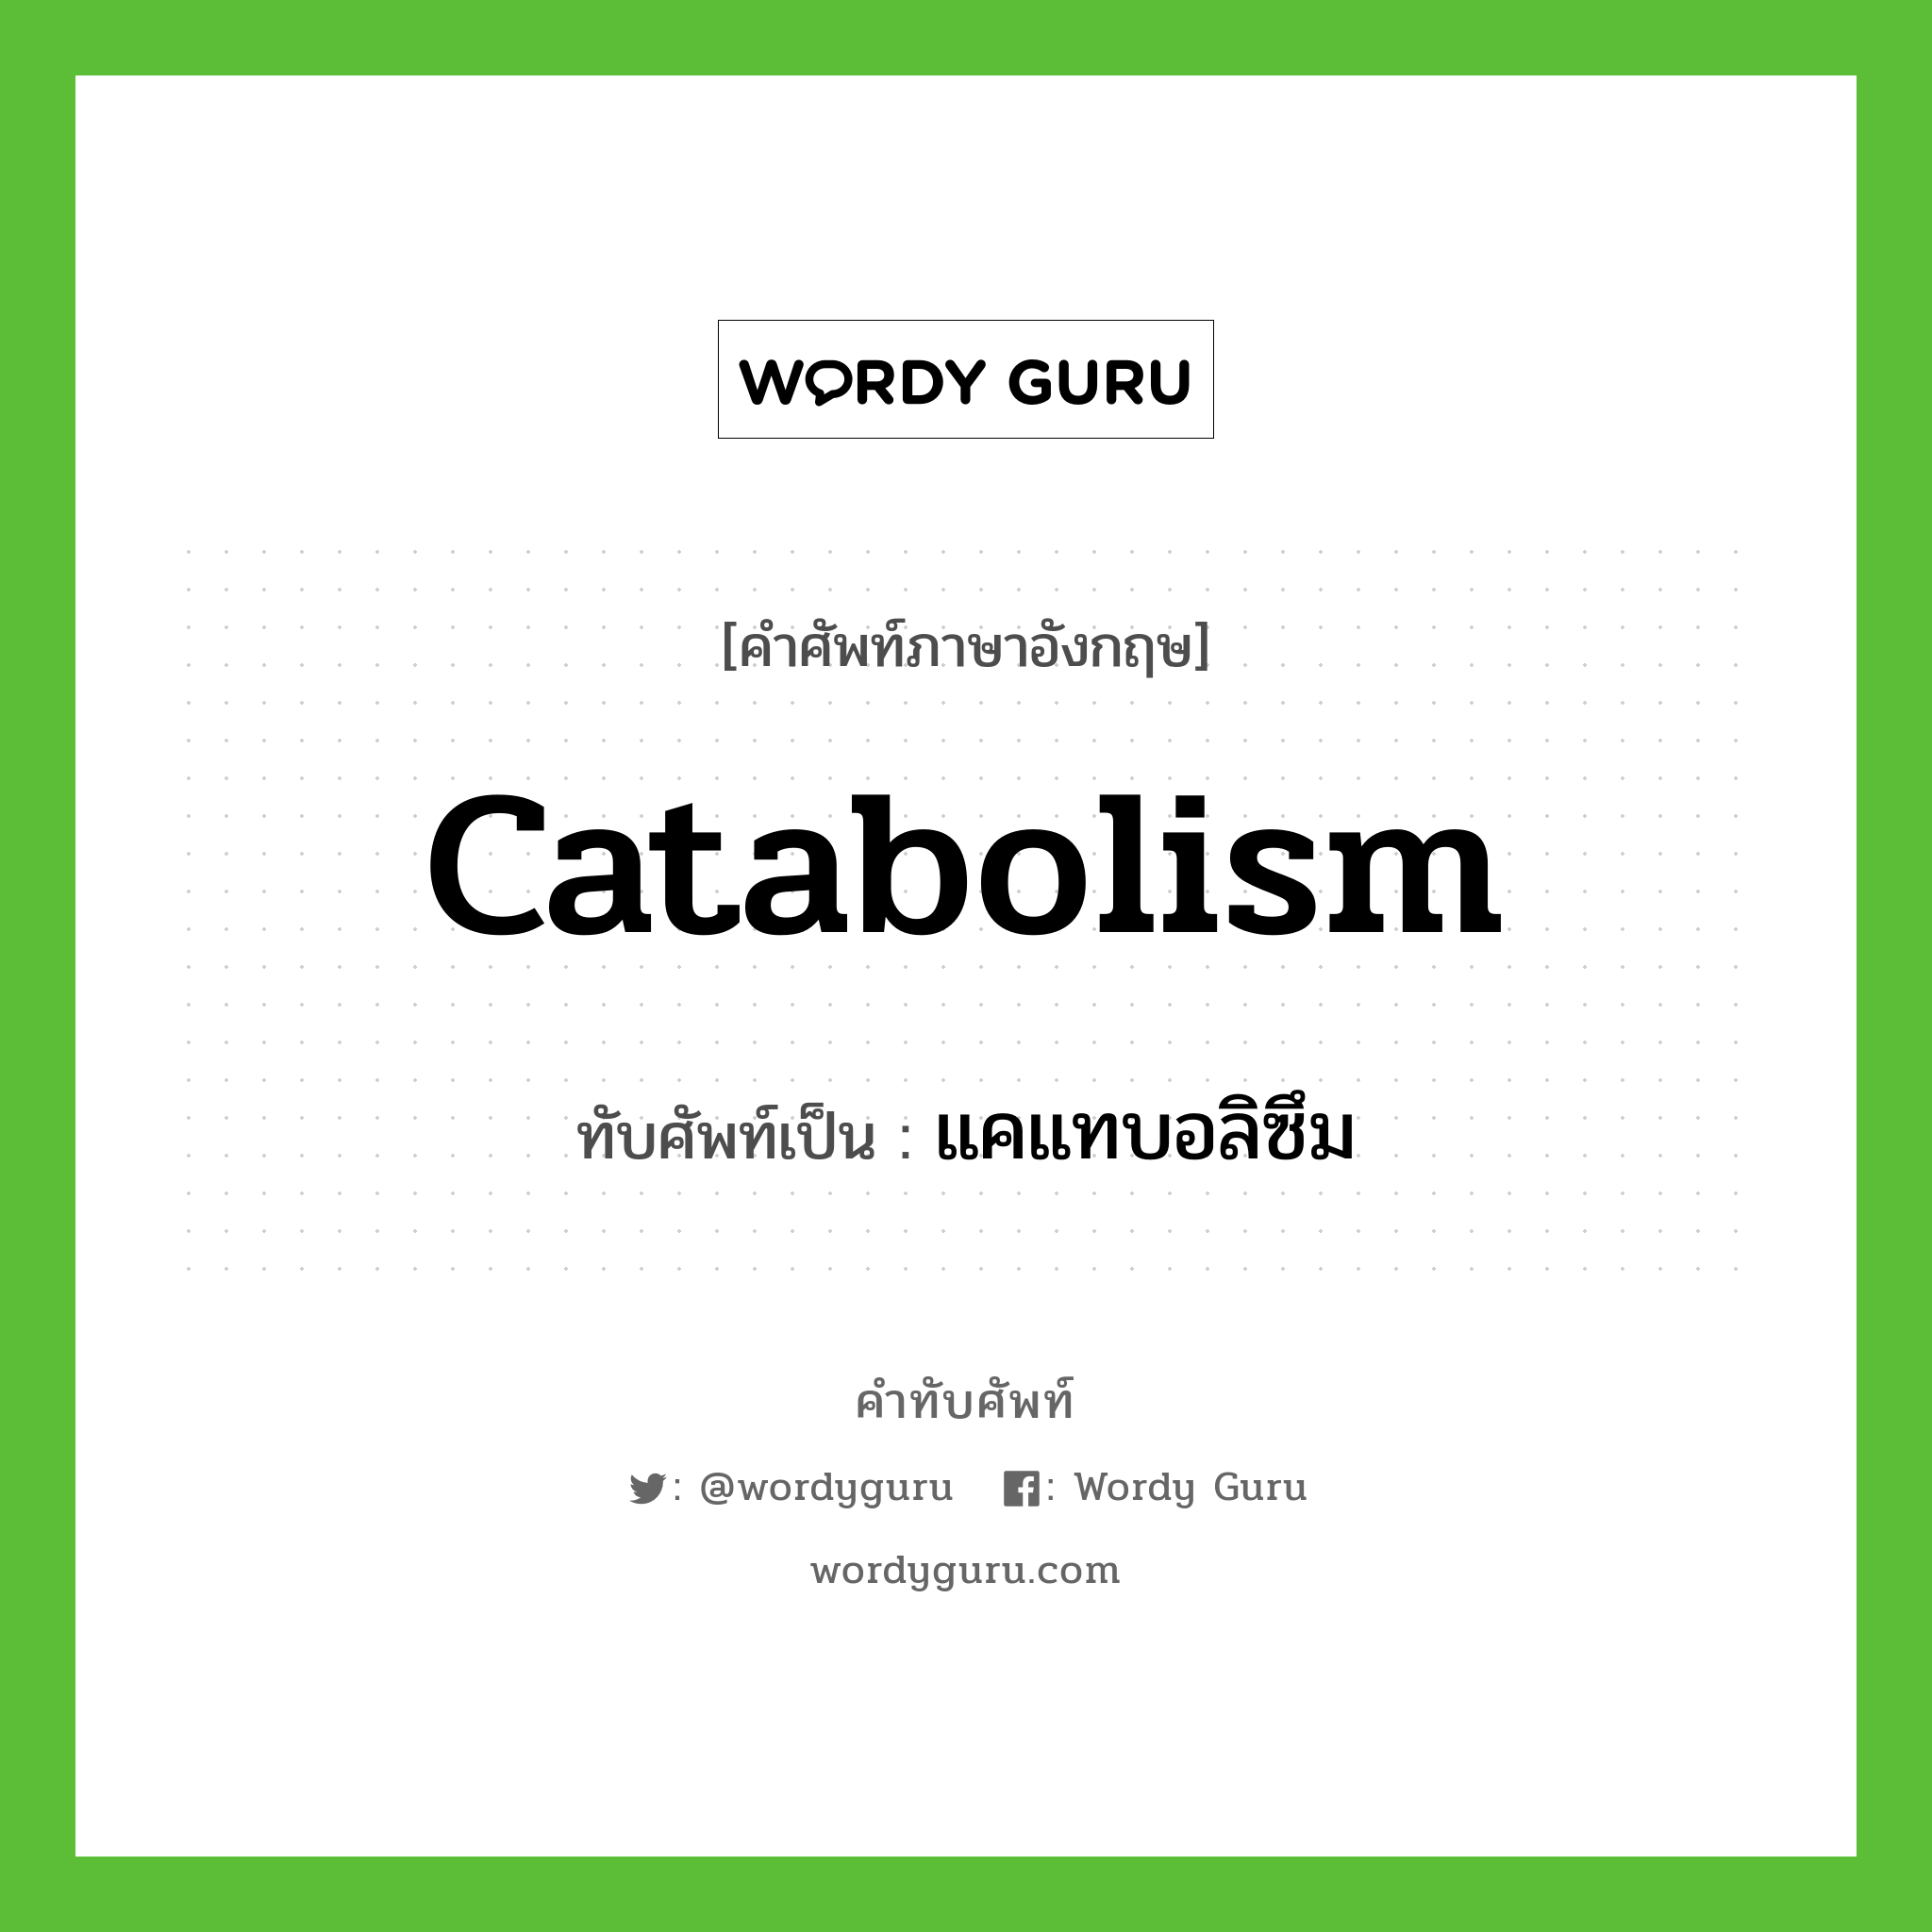 catabolism เขียนเป็นคำไทยว่าอะไร?, คำศัพท์ภาษาอังกฤษ catabolism ทับศัพท์เป็น แคแทบอลิซึม